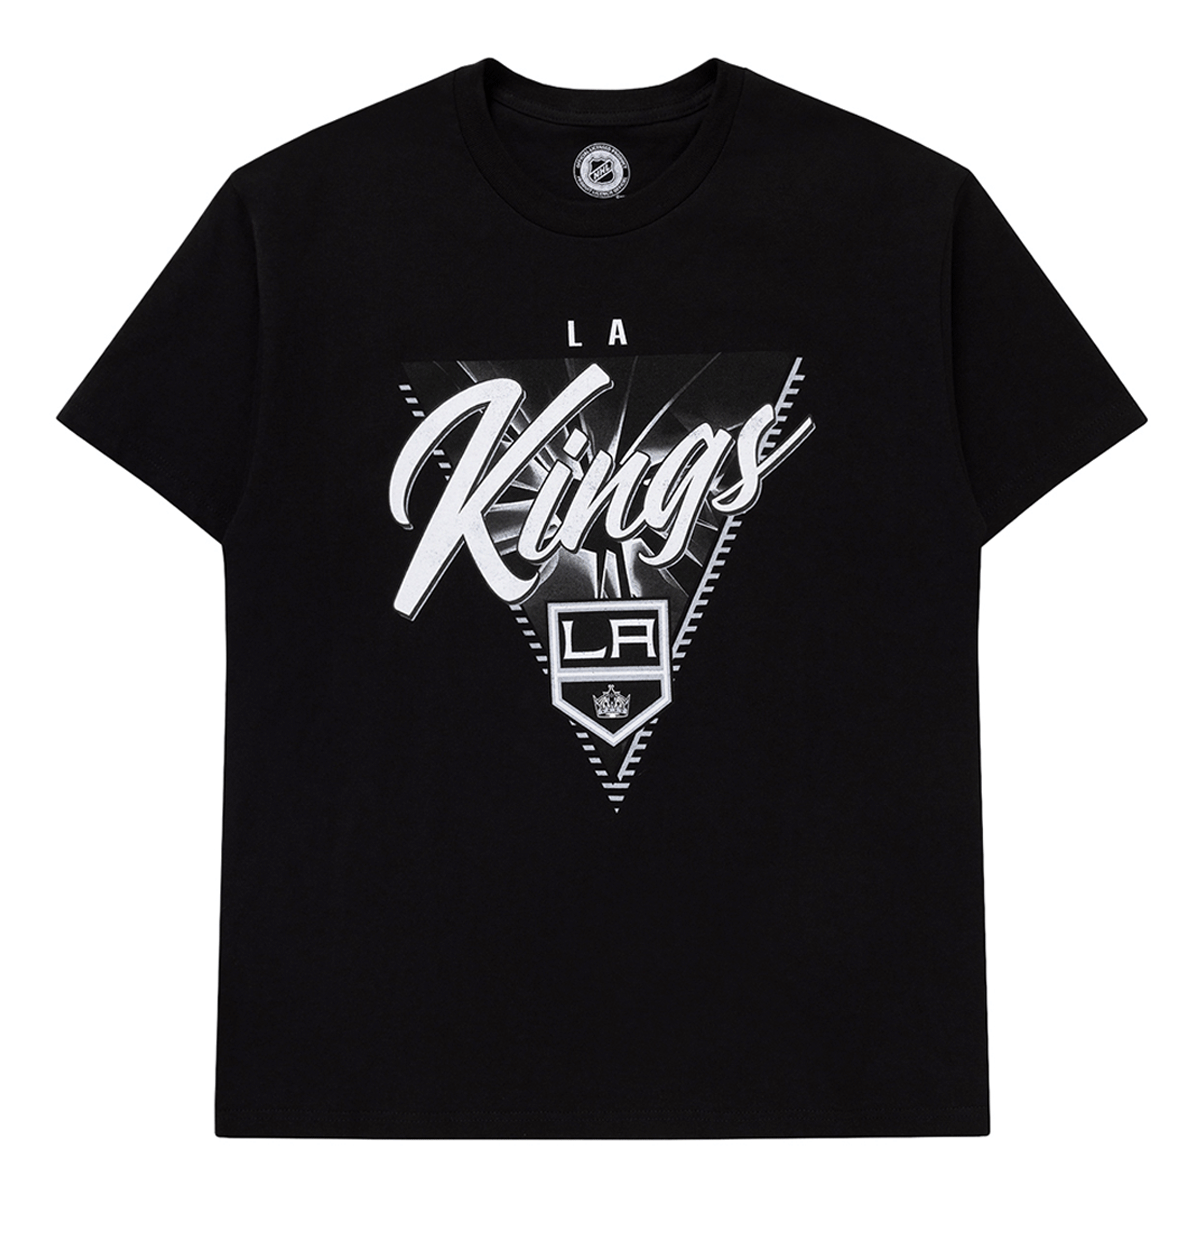 Los Angeles Kings Jerseys, Kings Jersey Deals, Kings Breakaway Jerseys,  Kings Hockey Sweater